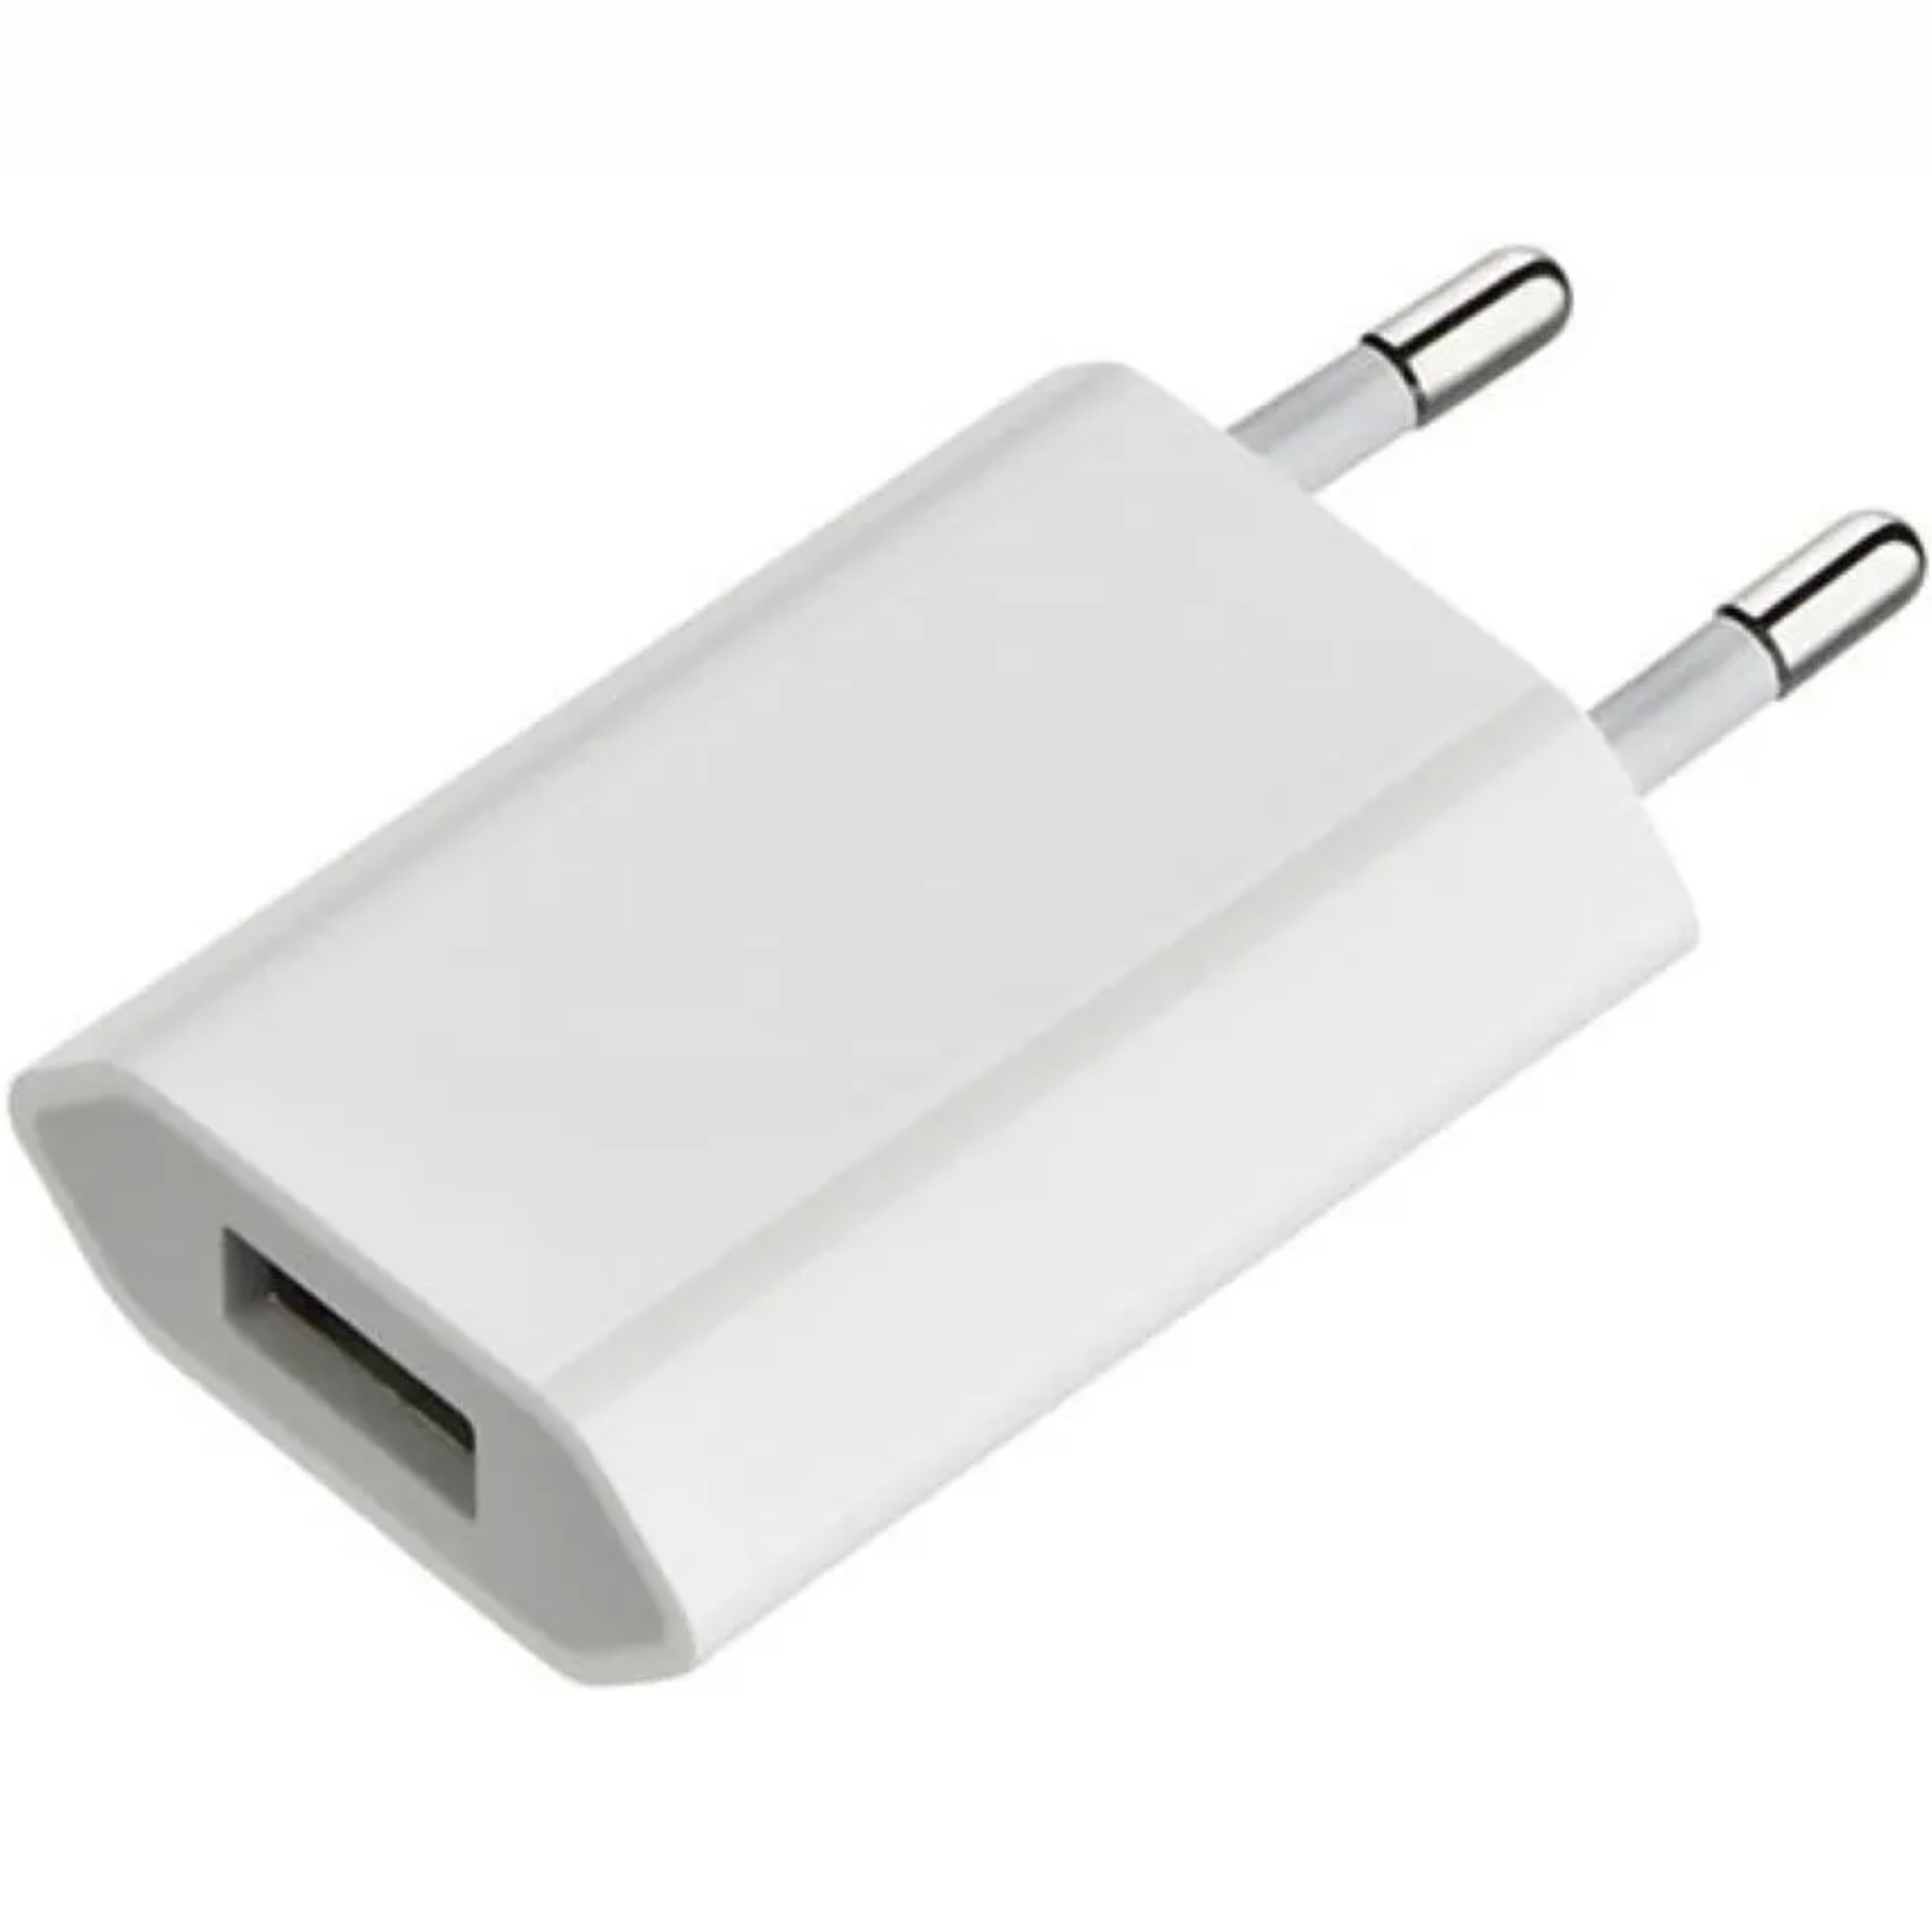 Купить зарядку эпл. Сетевая зарядка Apple md813zm/a. Адаптер Apple md813zm/a, белый. Адаптер 5v 1a. Сетевое зарядное устройство Apple mgn13zm/a белый.